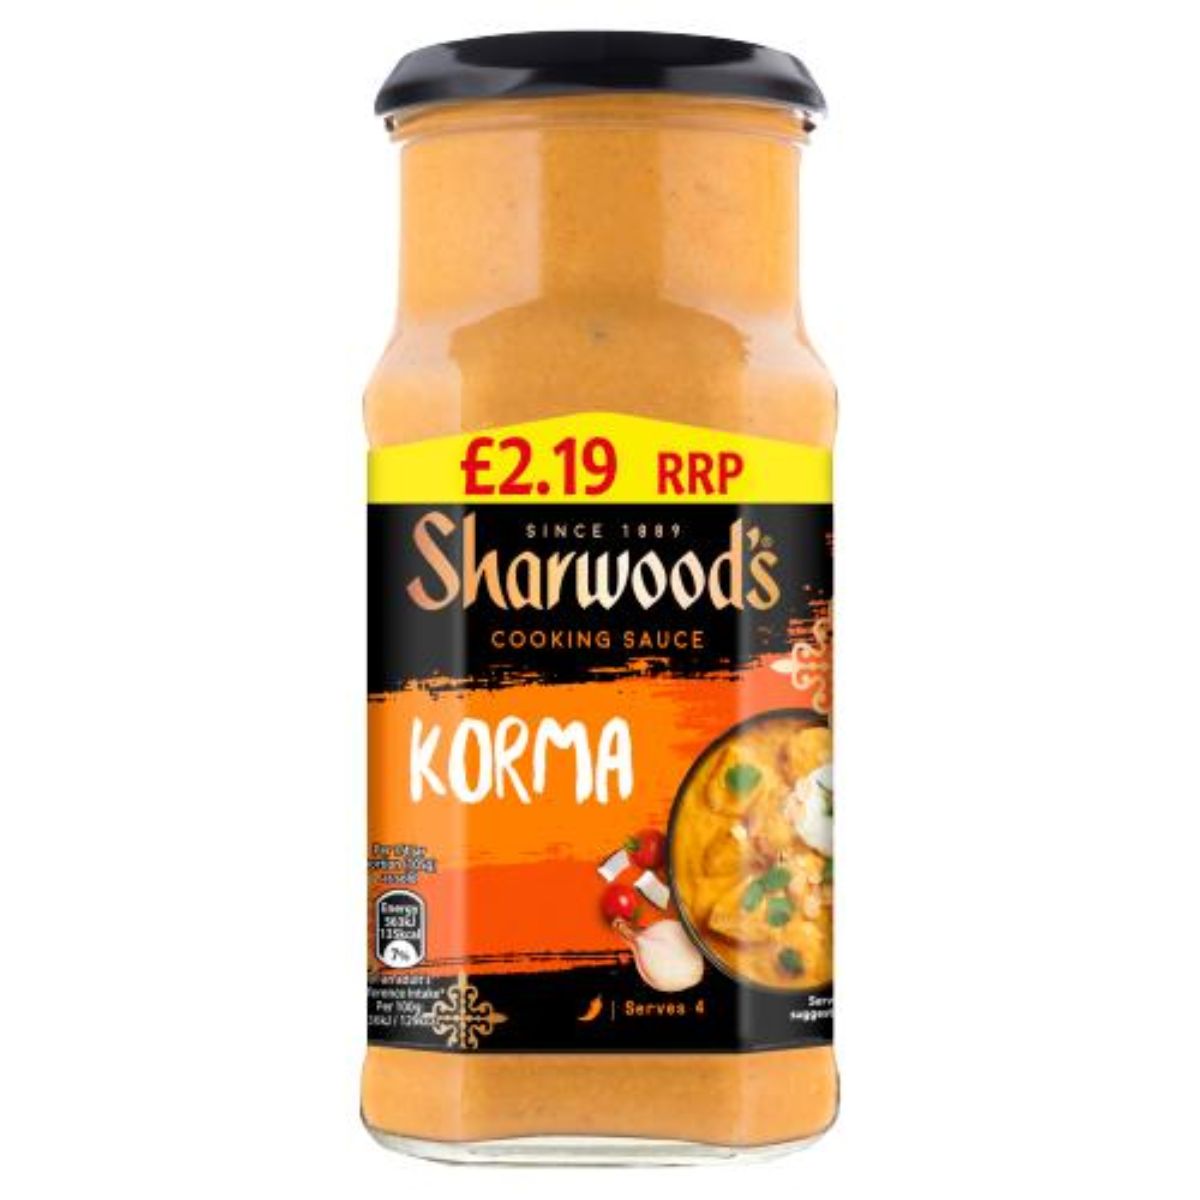 A jar of Sharwoods - Cooking Sauce Korma - 420g curry.